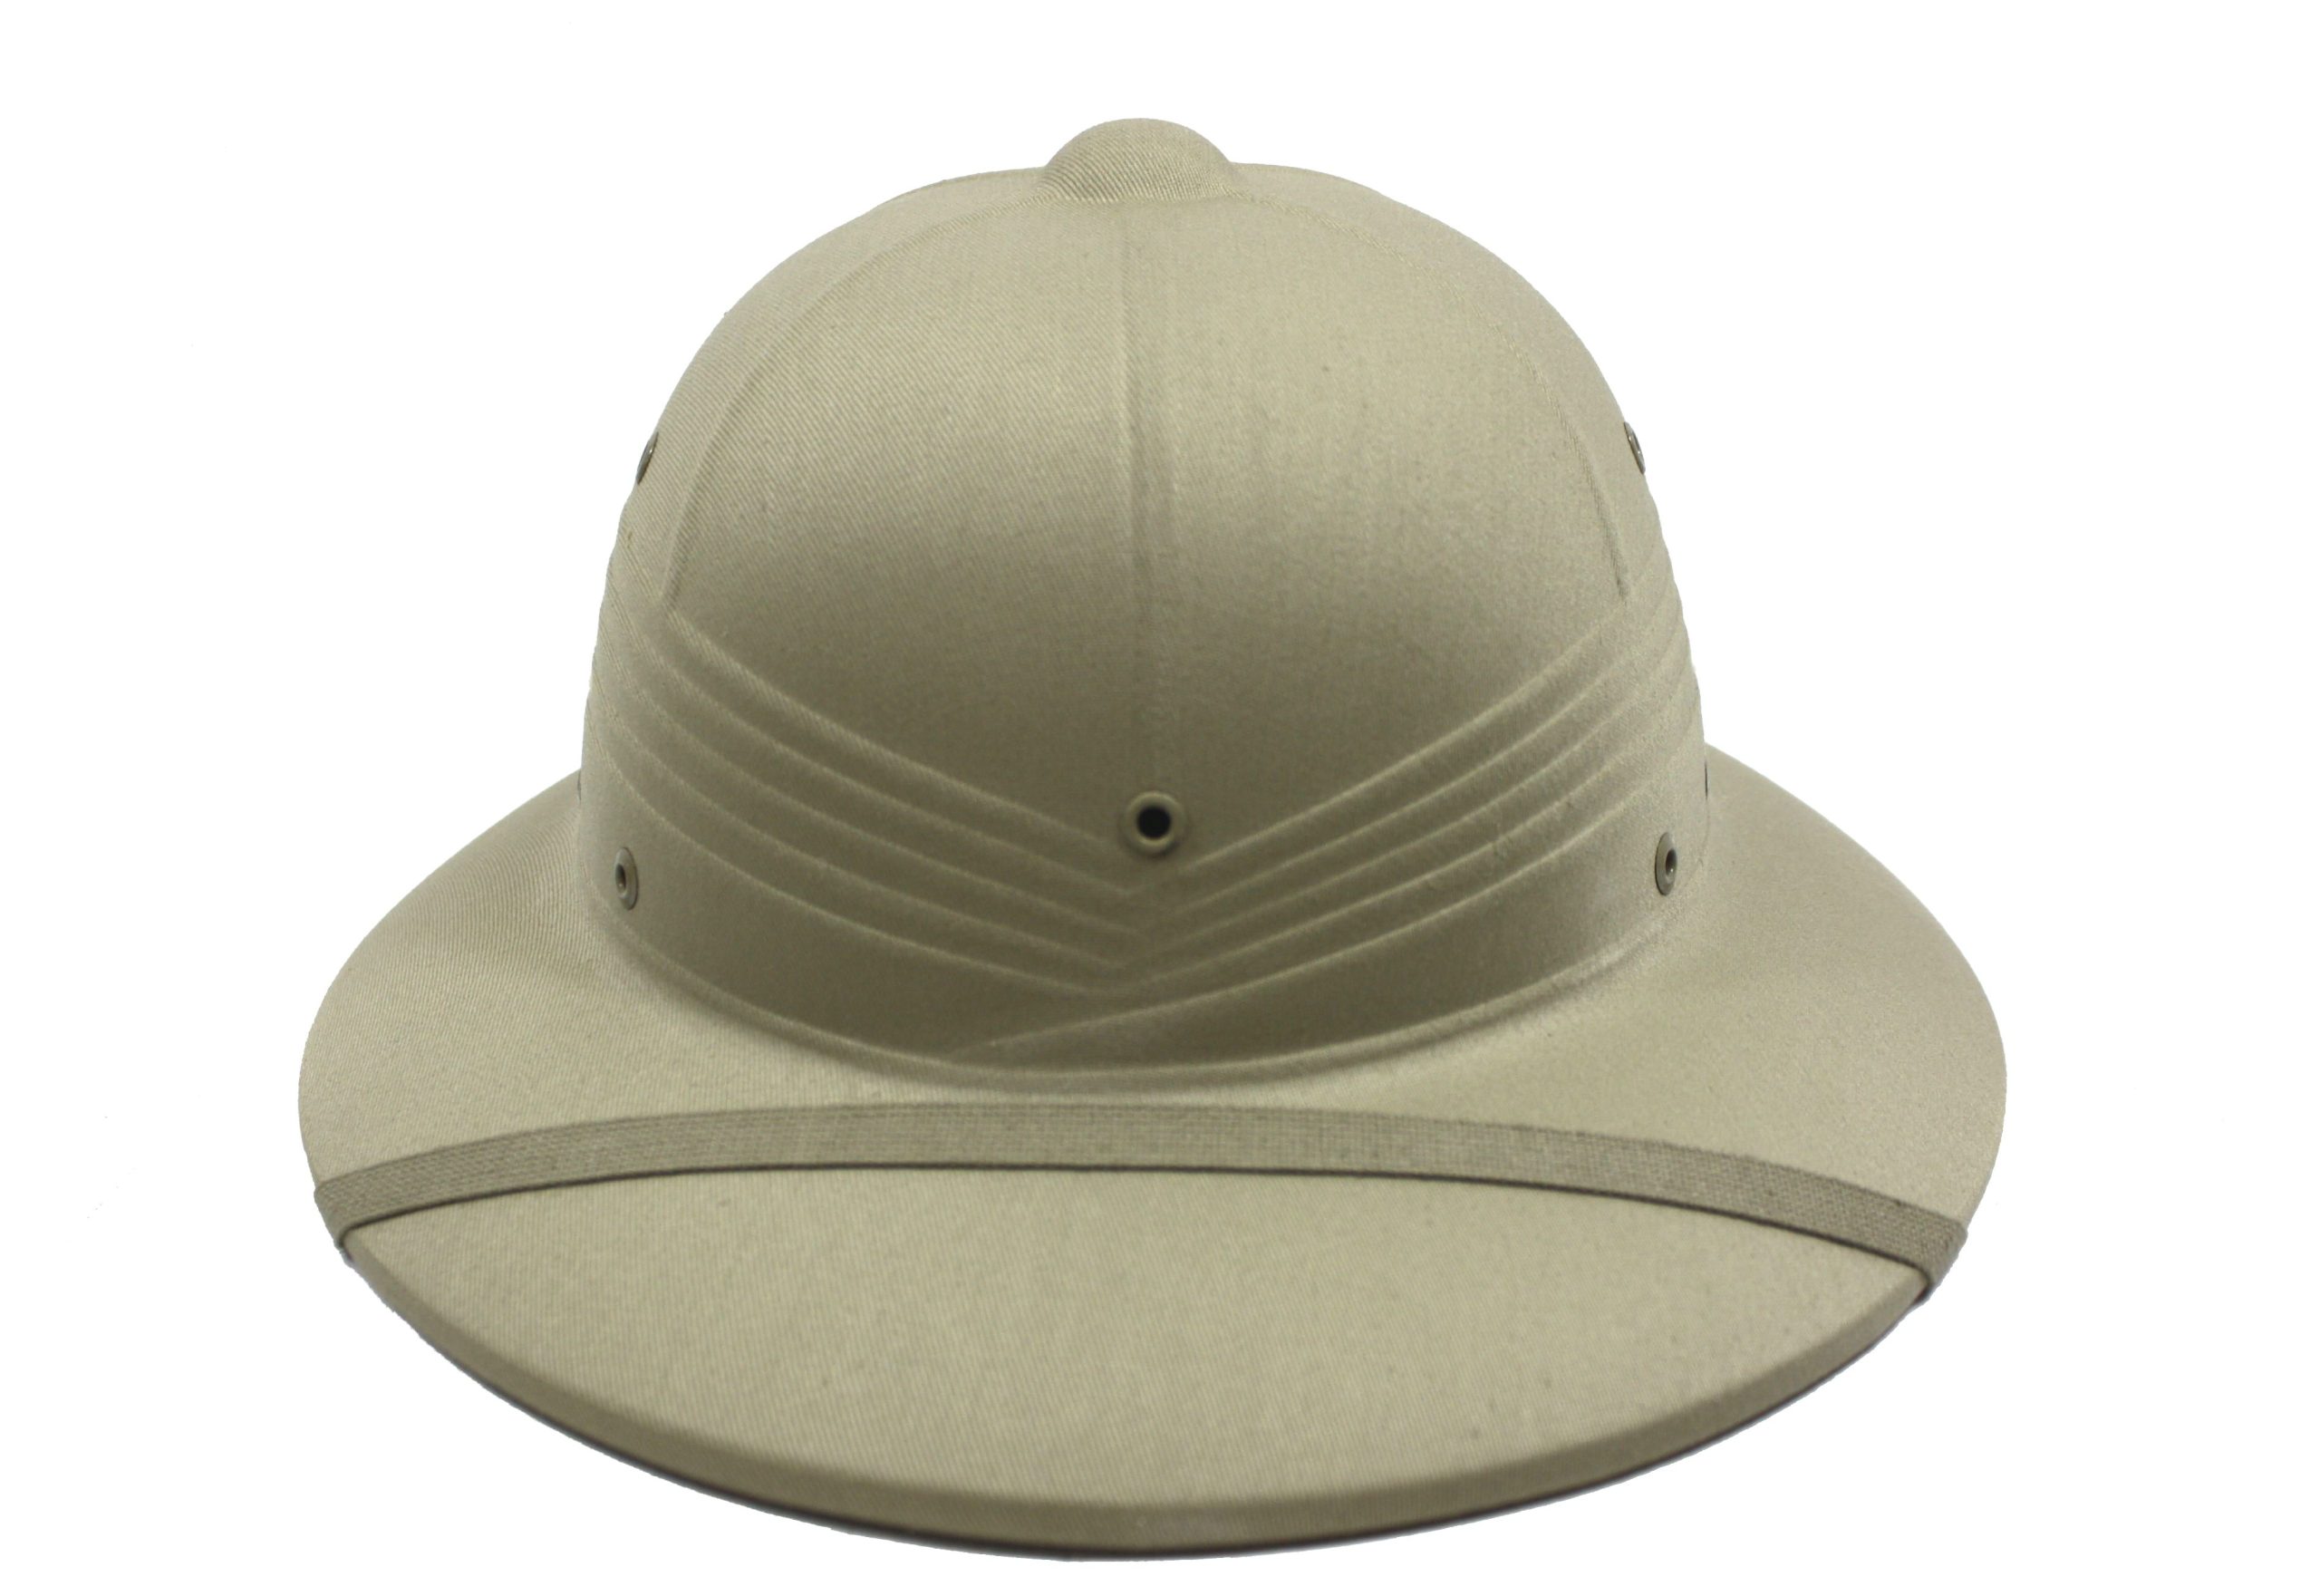 Vintage U.S. Military Pith Helmet Sunrigid Safari Hat 1963 Vietnam Era ...